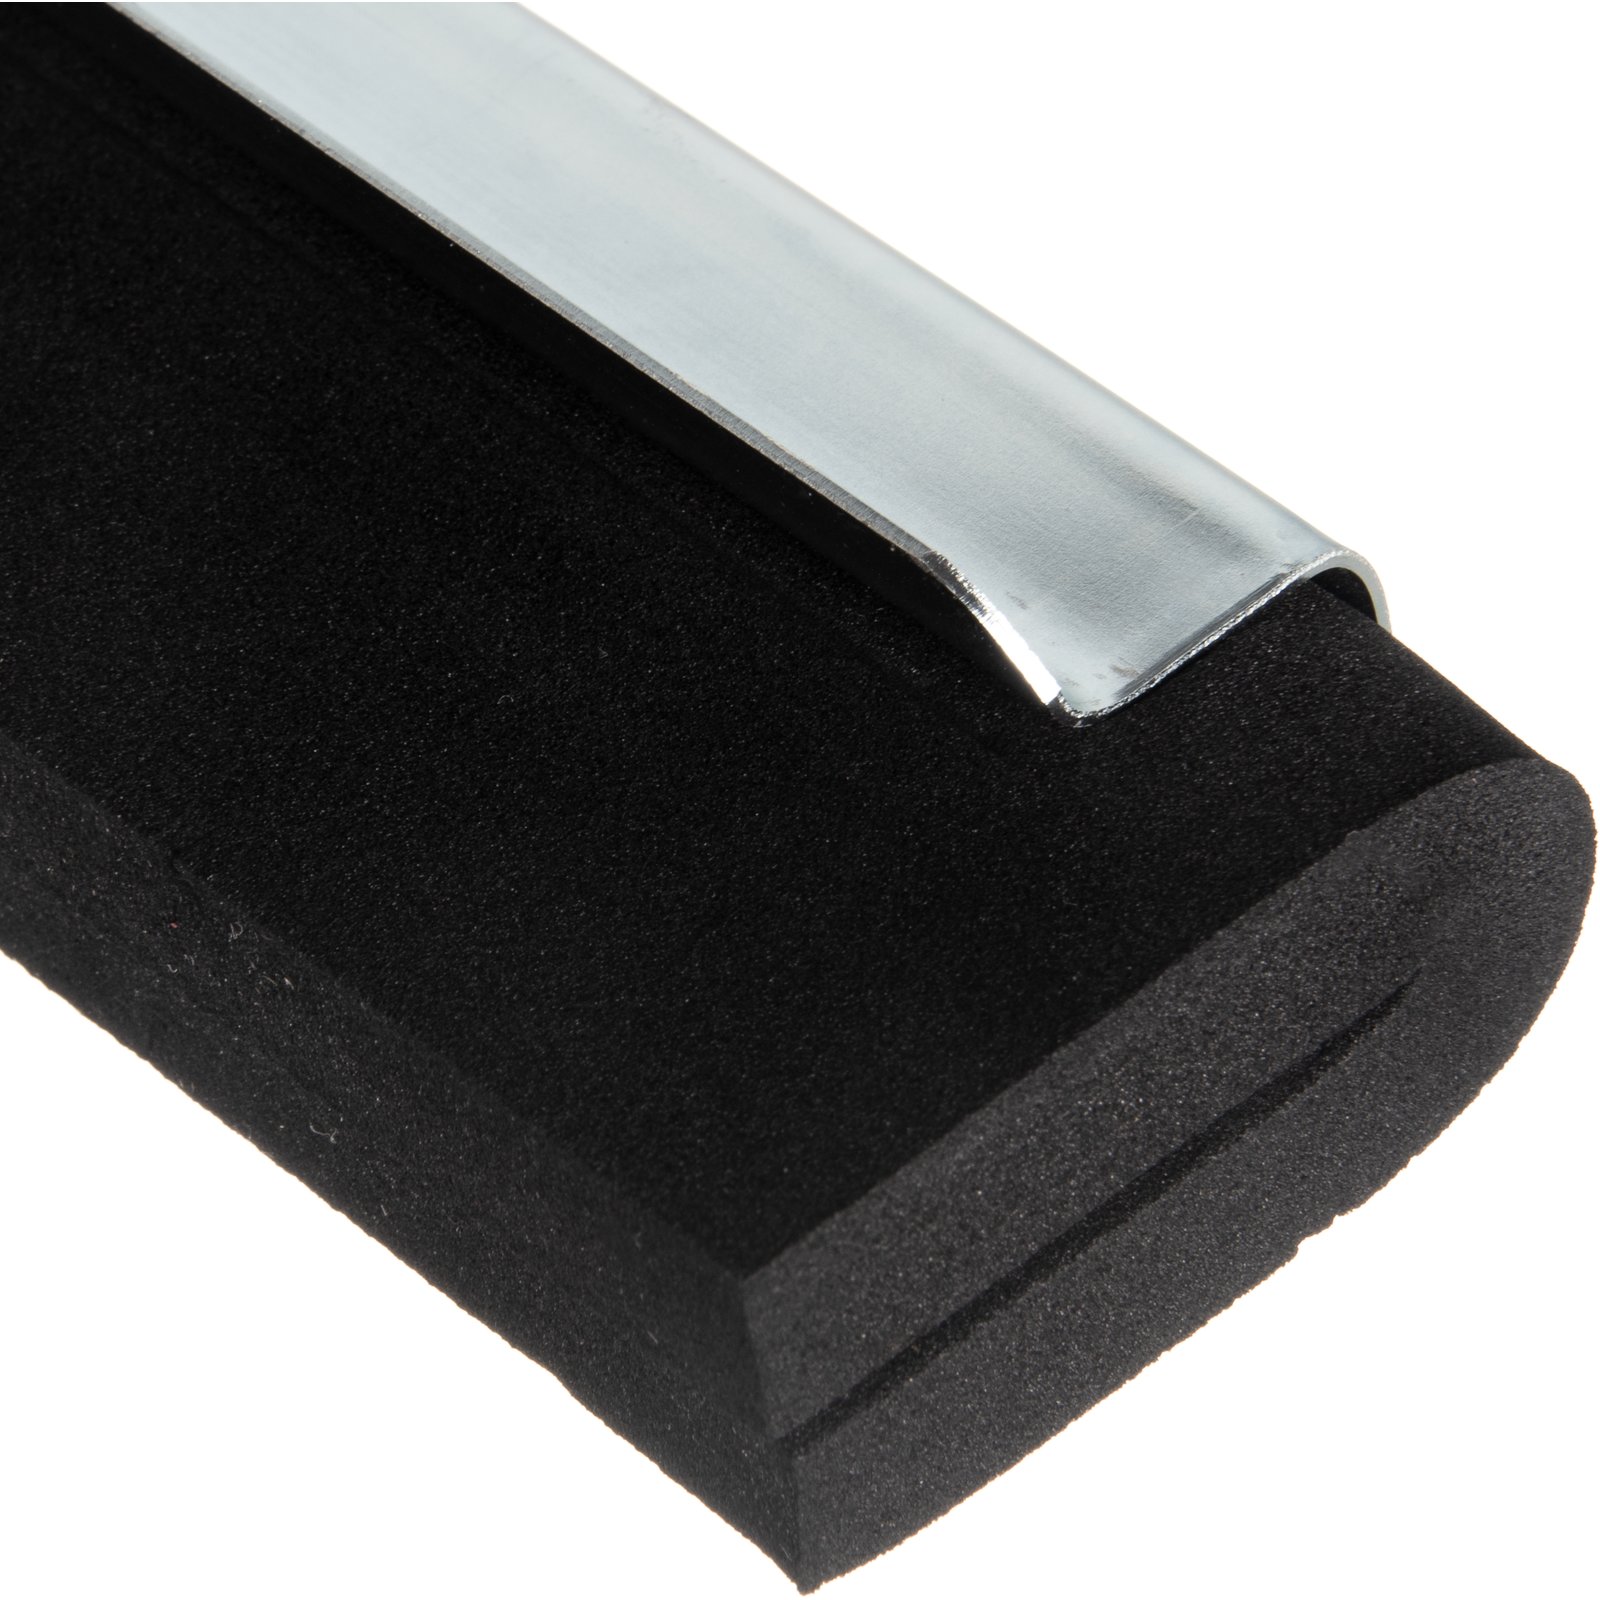 36682400 - Flo-Pac® Soft Heavy Duty Foam Rubber Squeegee w/Threaded Socket  22 - Black